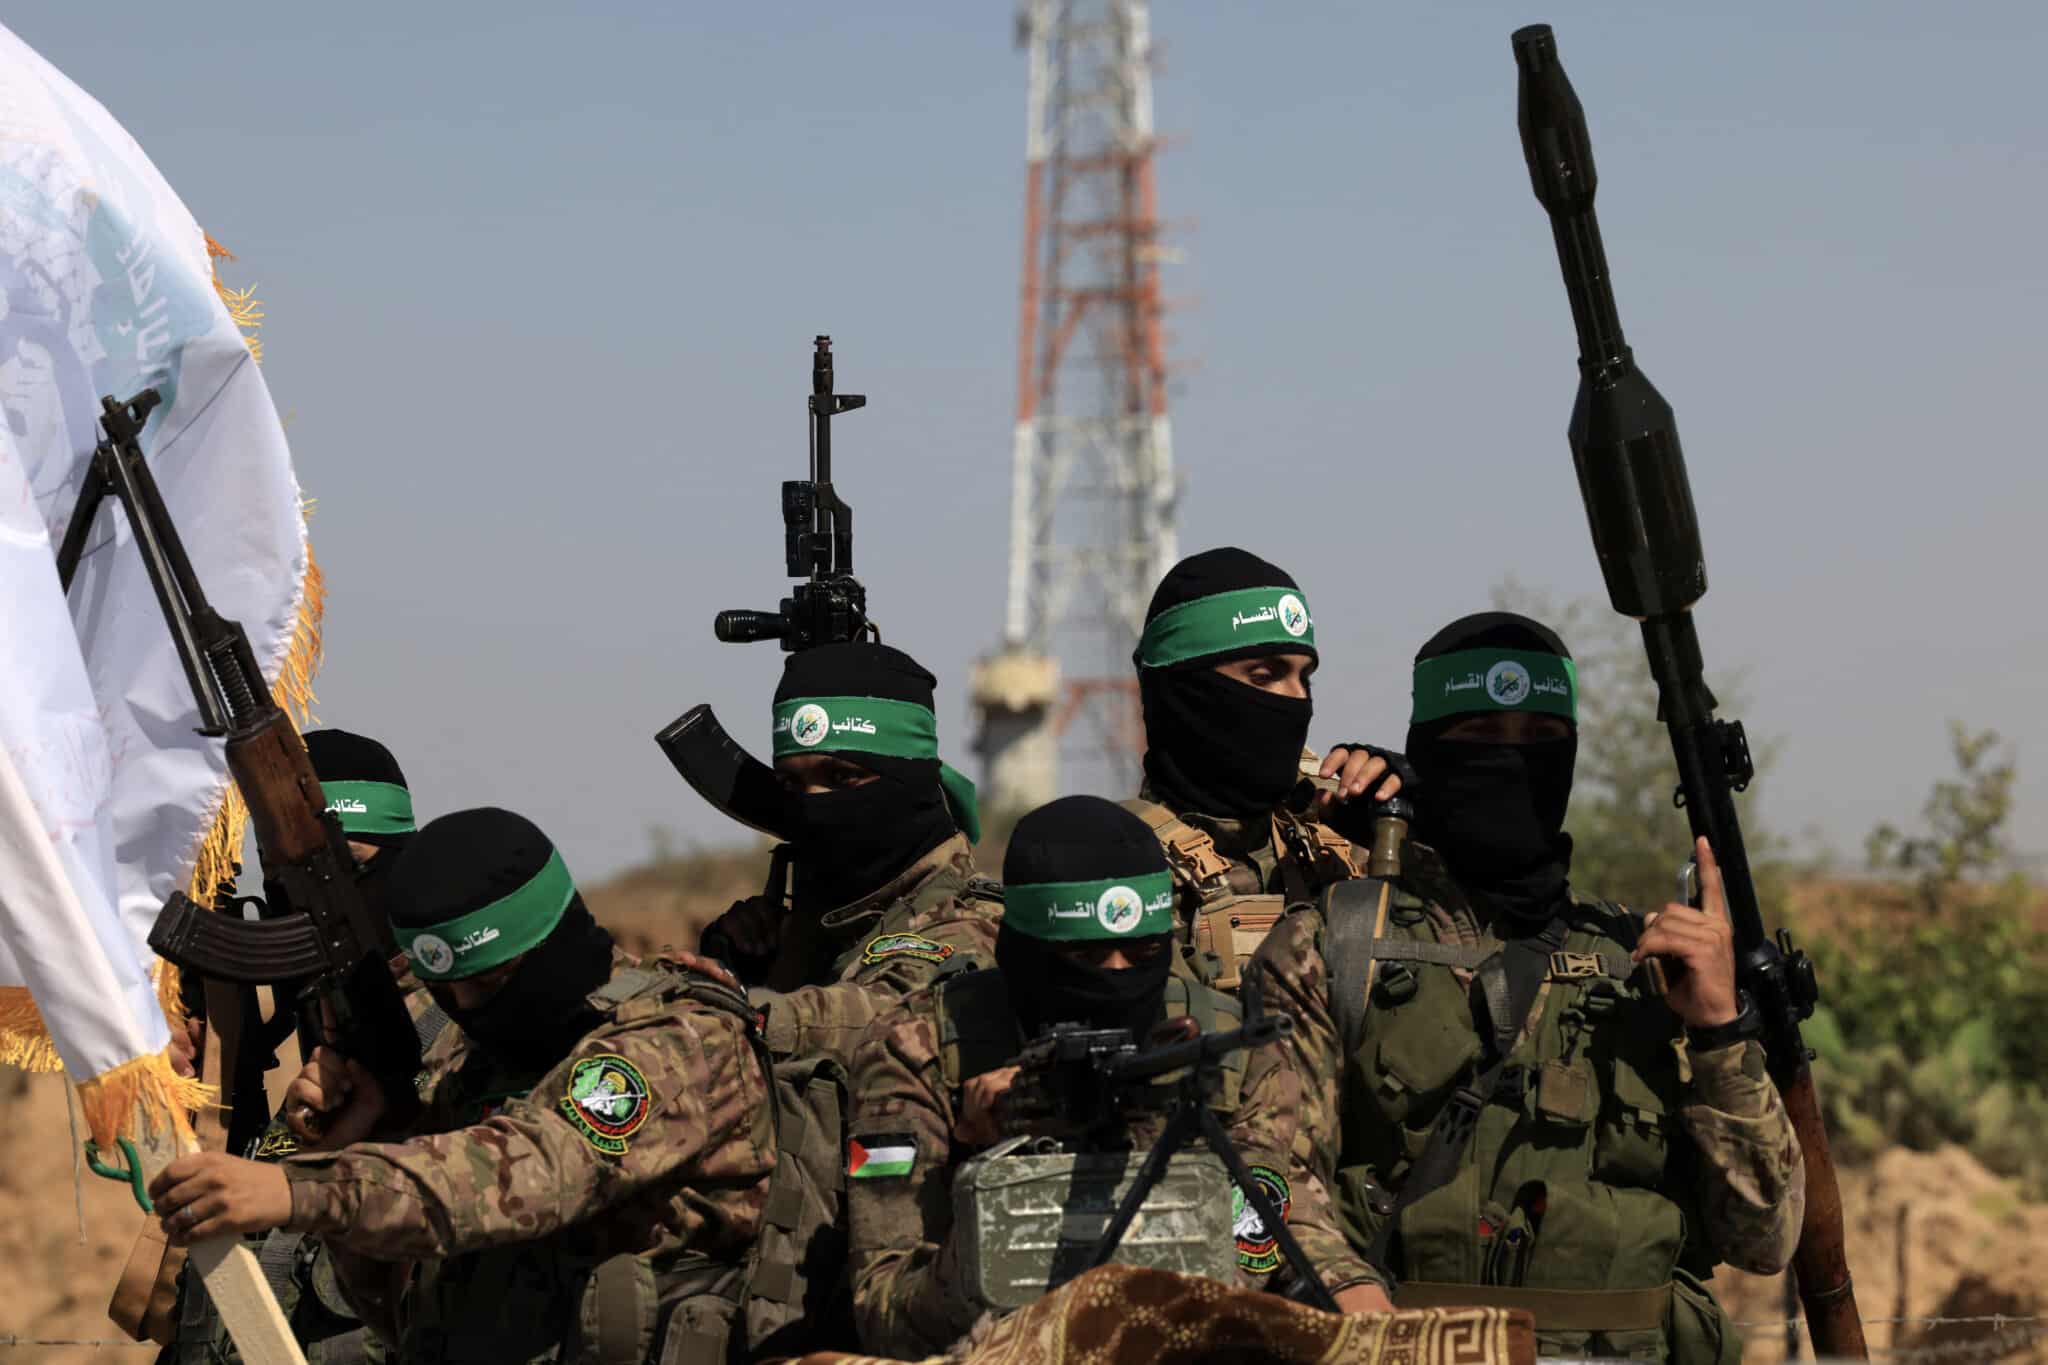 Βίντεο: Μαχητής της Χαμάς ανατινάζει ισραηλινό τεθωρακισμένο όχημα με έναν στρατιώτη στην κορυφή του